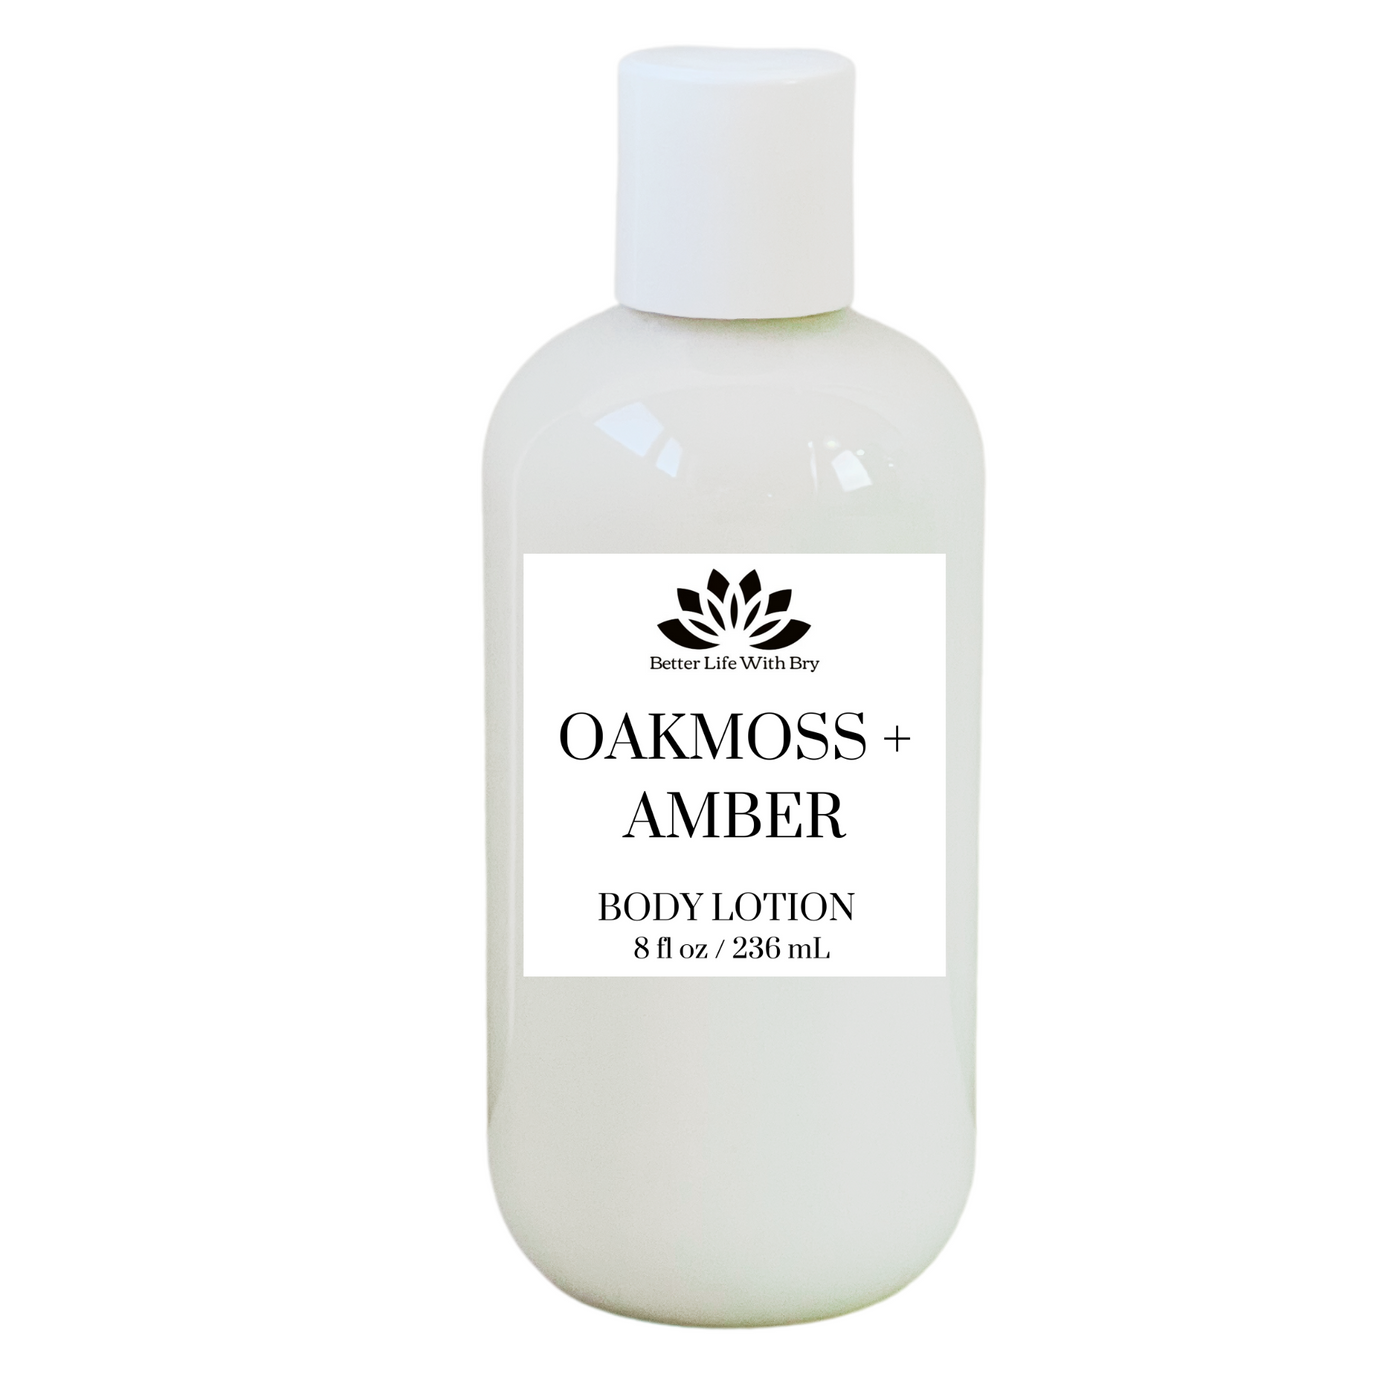 Oakmoss + Amber Body Lotion